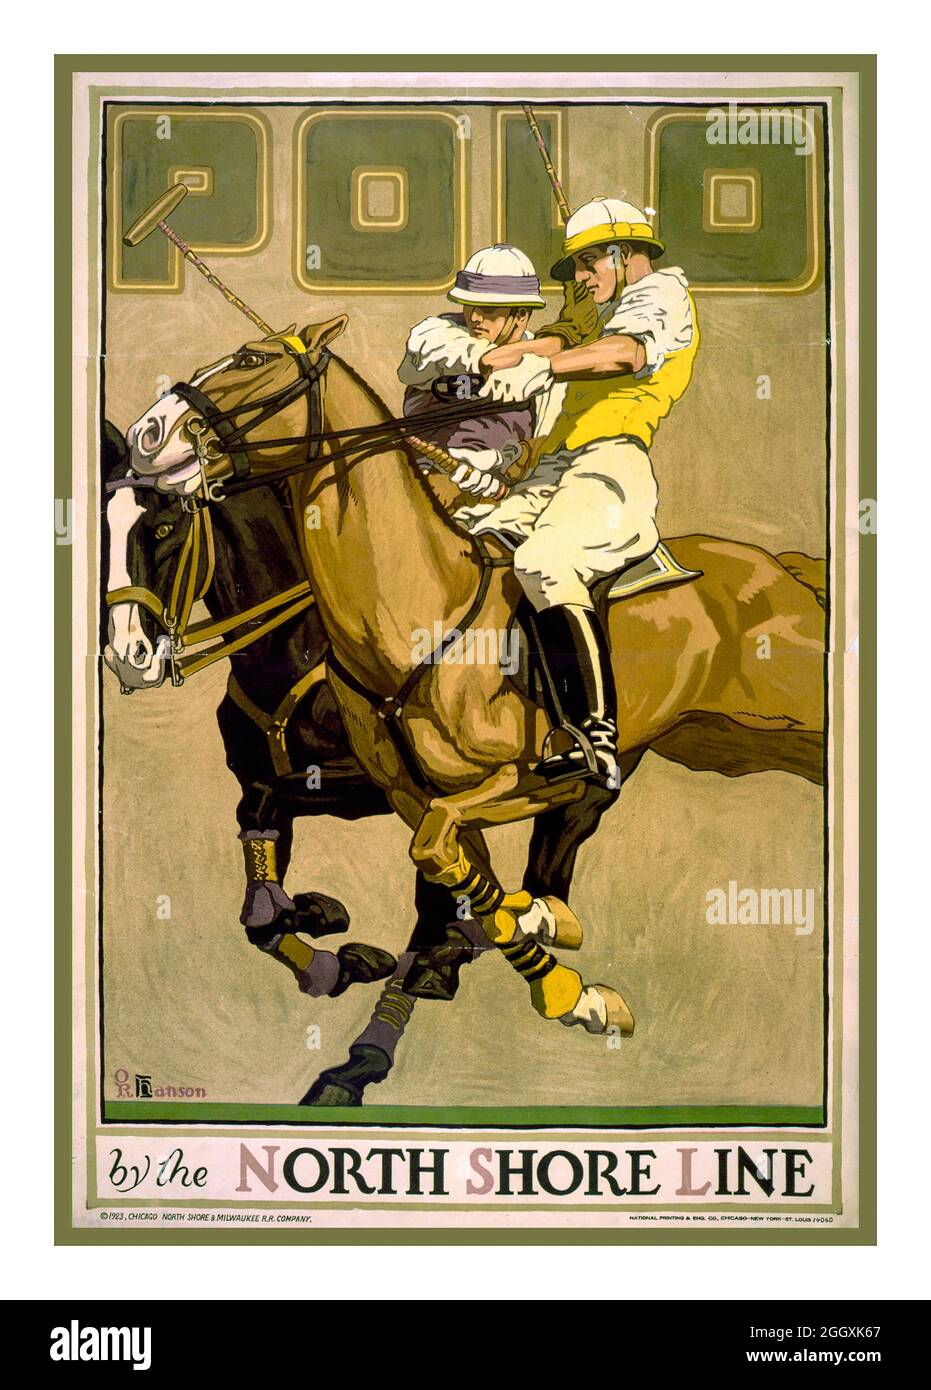 Poster vintage 1920s "Polo by the North Shore Line" / O.R. Hanson. Creatore(i): Hanson, O. R. (Oscar Rabe Hanson), artista Data di creazione/pubblicazione: Chicago : National Printing & Ing. Co., C19 1 stampa (poster) : due giocatori di polo a cavallo, North Shore Line USA Foto Stock